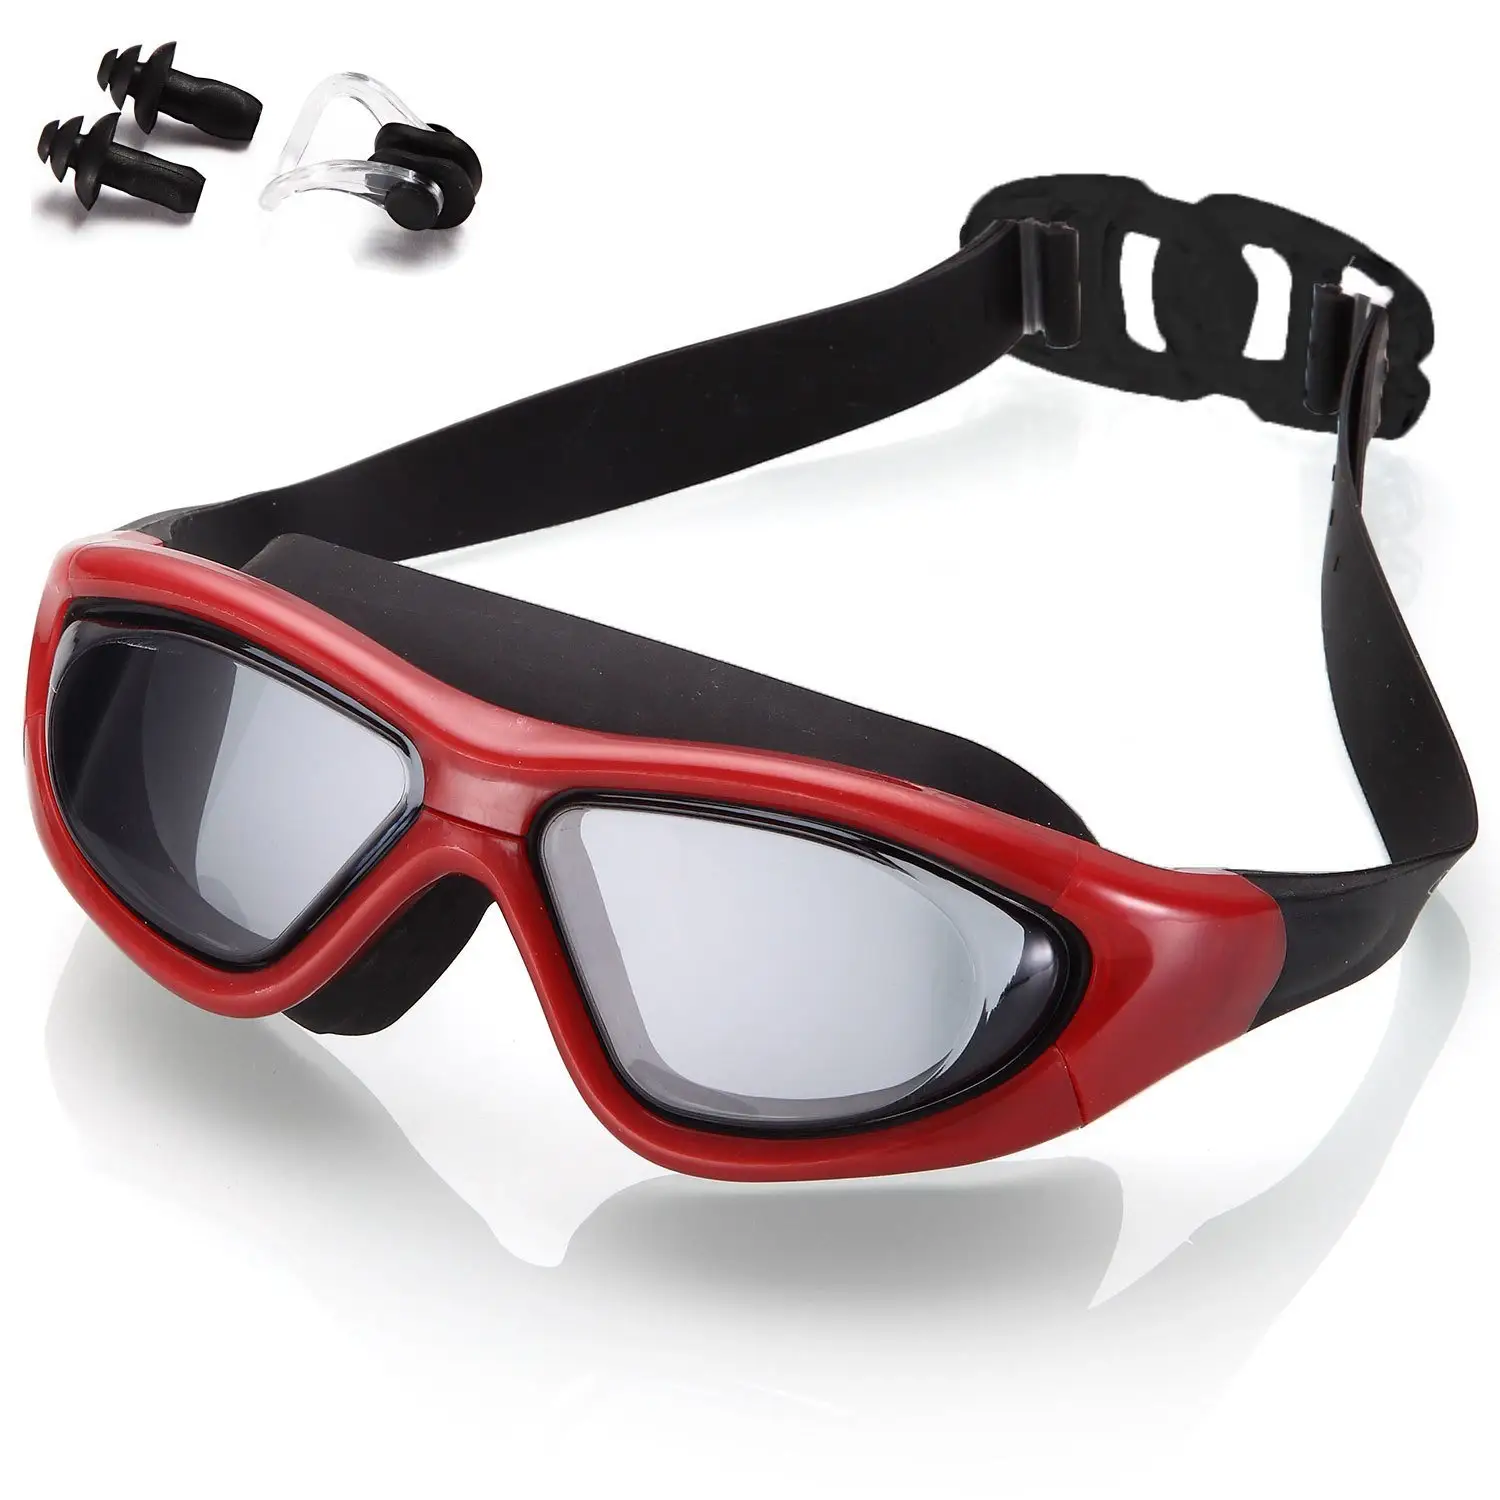 공장 도매 김서림 방지 수영 고글 조정 가능한 PC 렌즈 성인용 수영 안경 안개 방지